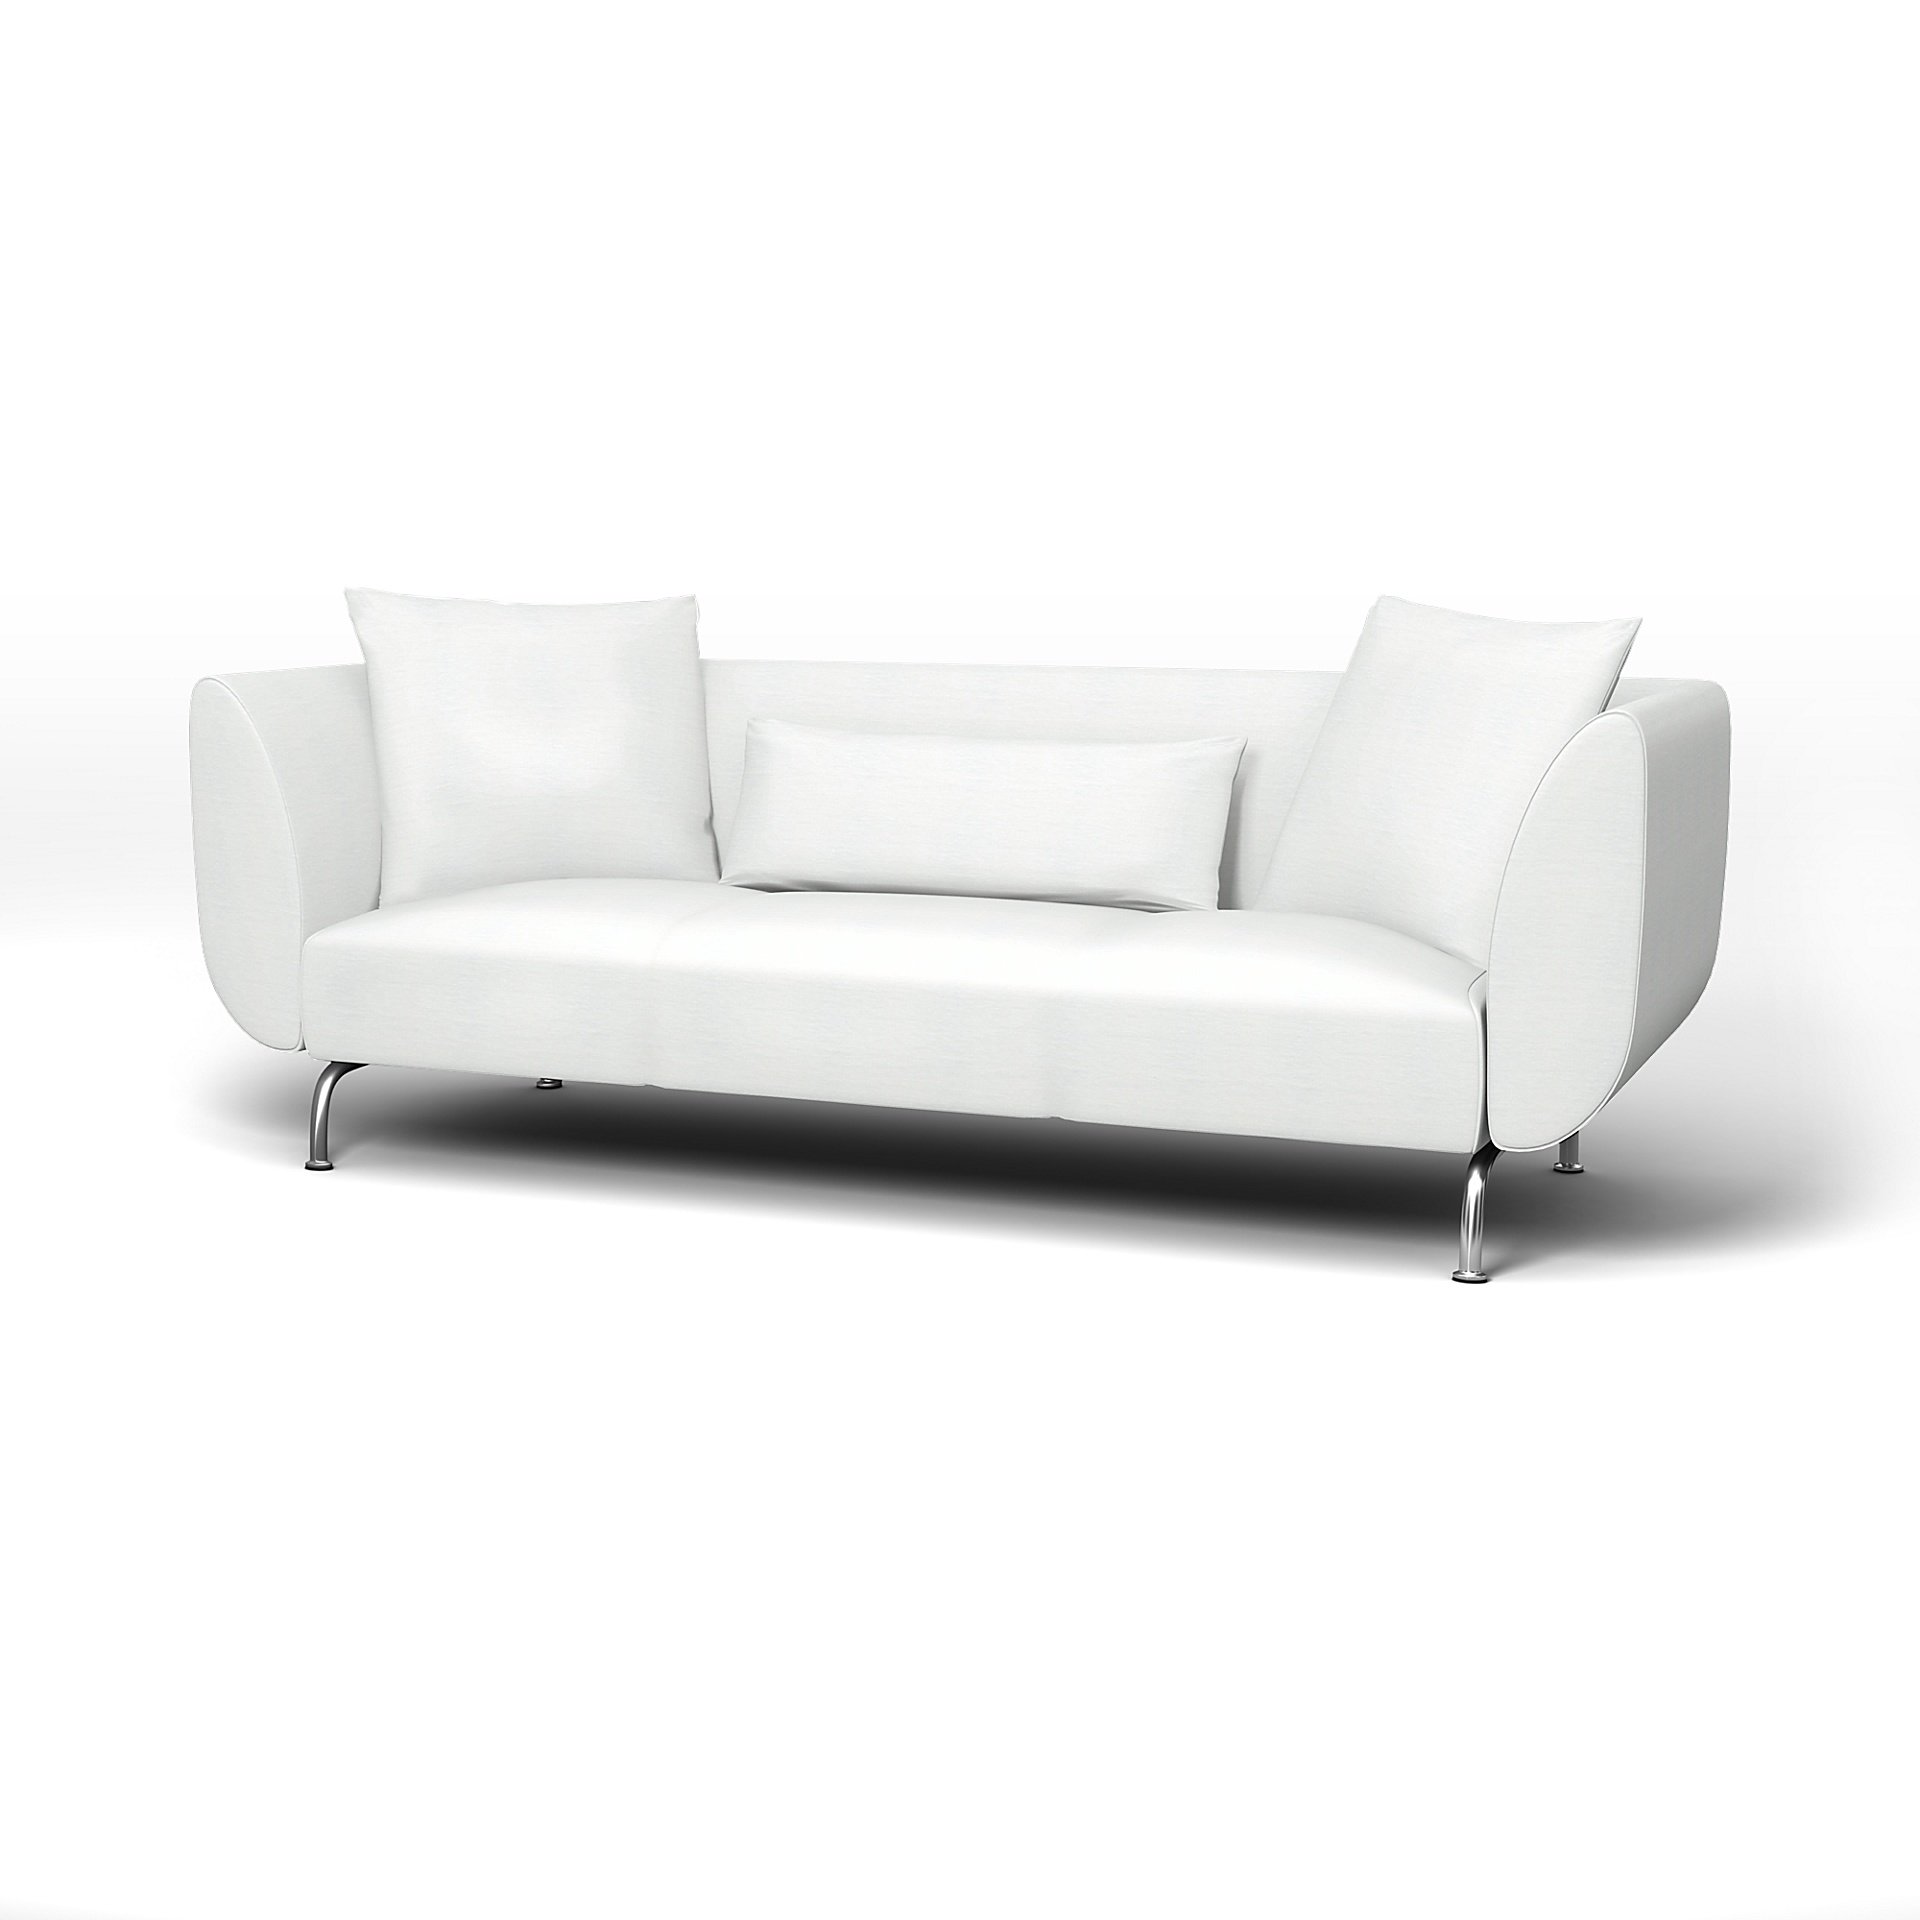 IKEA - Stromstad 3 Seater Sofa Cover, White, Linen - Bemz